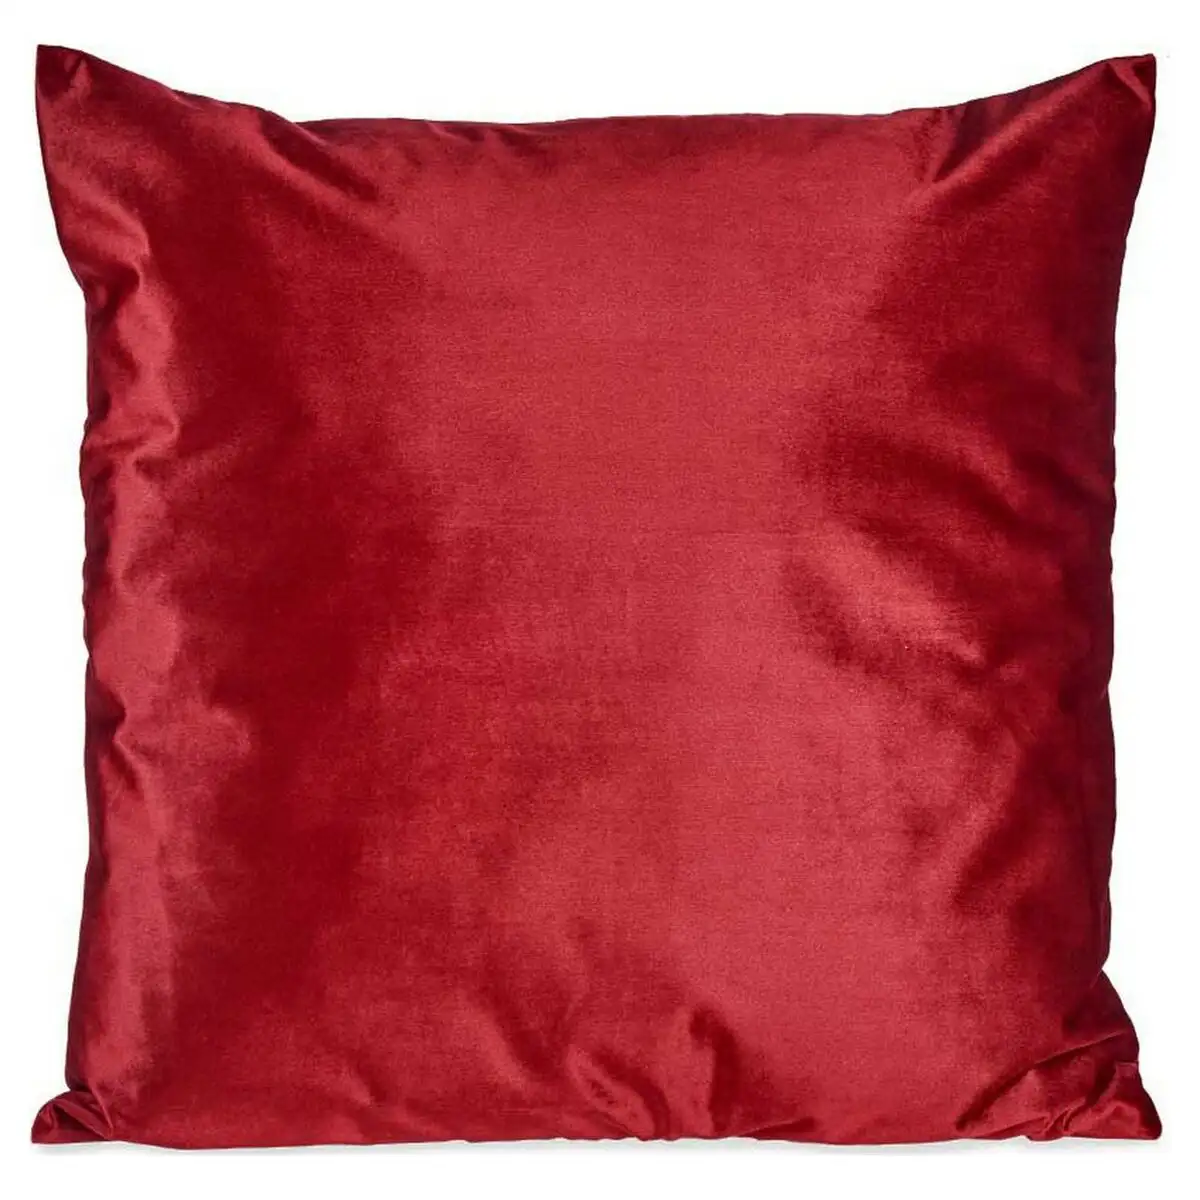 Coussin polyester velours rouge 60 x 18 x 60 cm_5790. Bienvenue sur DIAYTAR SENEGAL - Là où Chaque Objet a une Âme. Plongez dans notre catalogue et trouvez des articles qui portent l'essence de l'artisanat et de la passion.